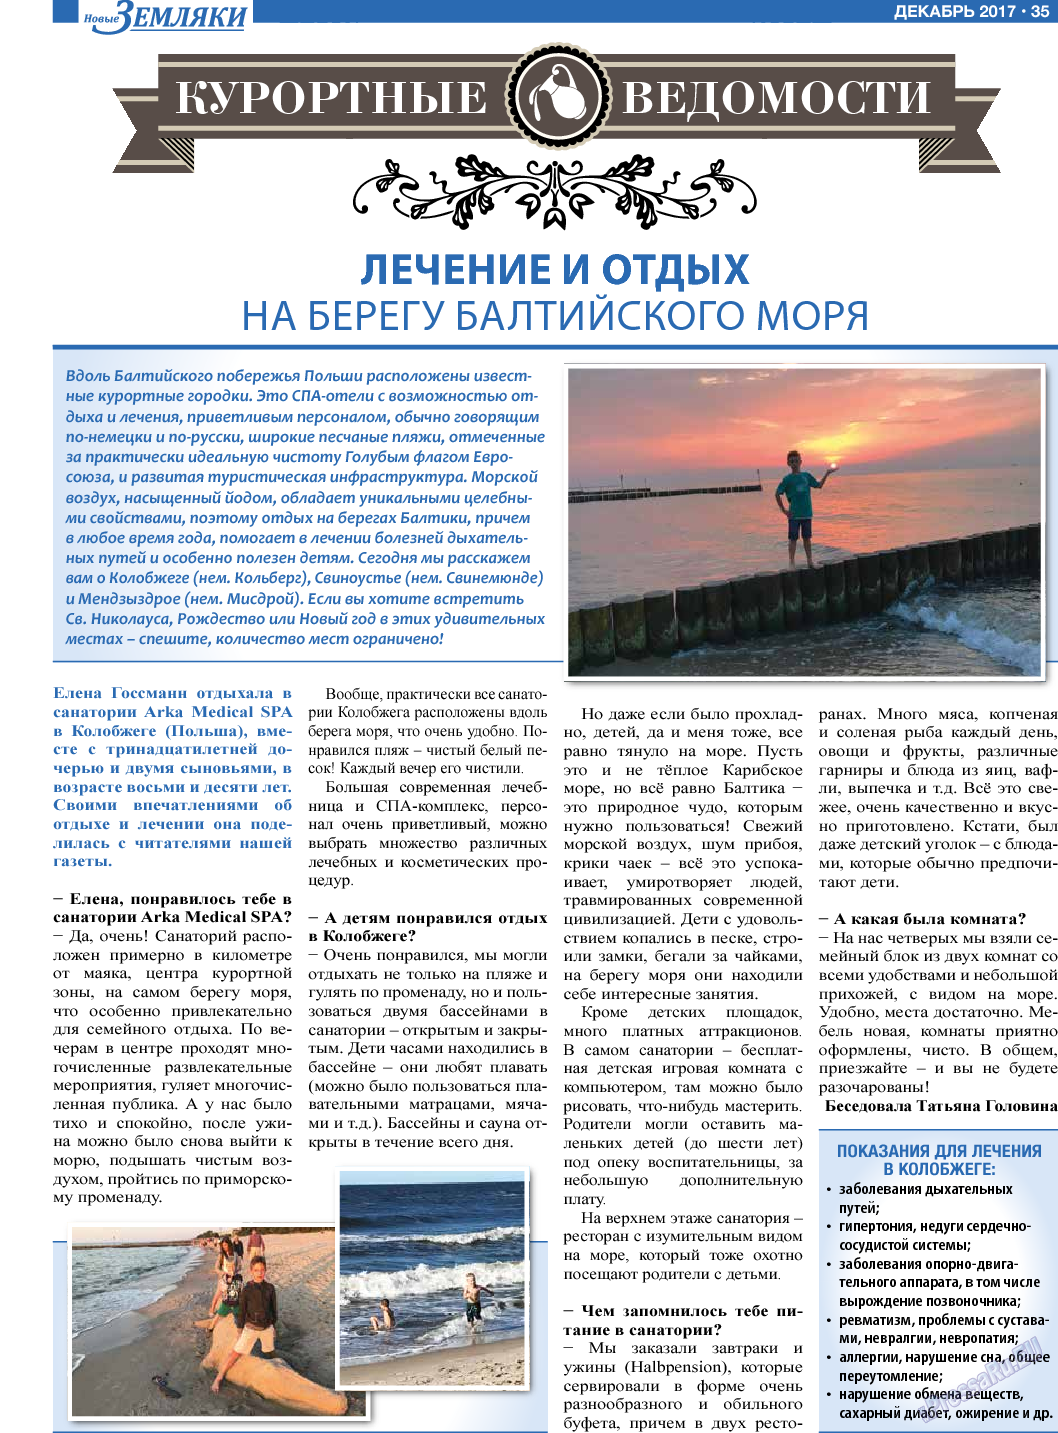 Новые Земляки, газета. 2017 №12 стр.35